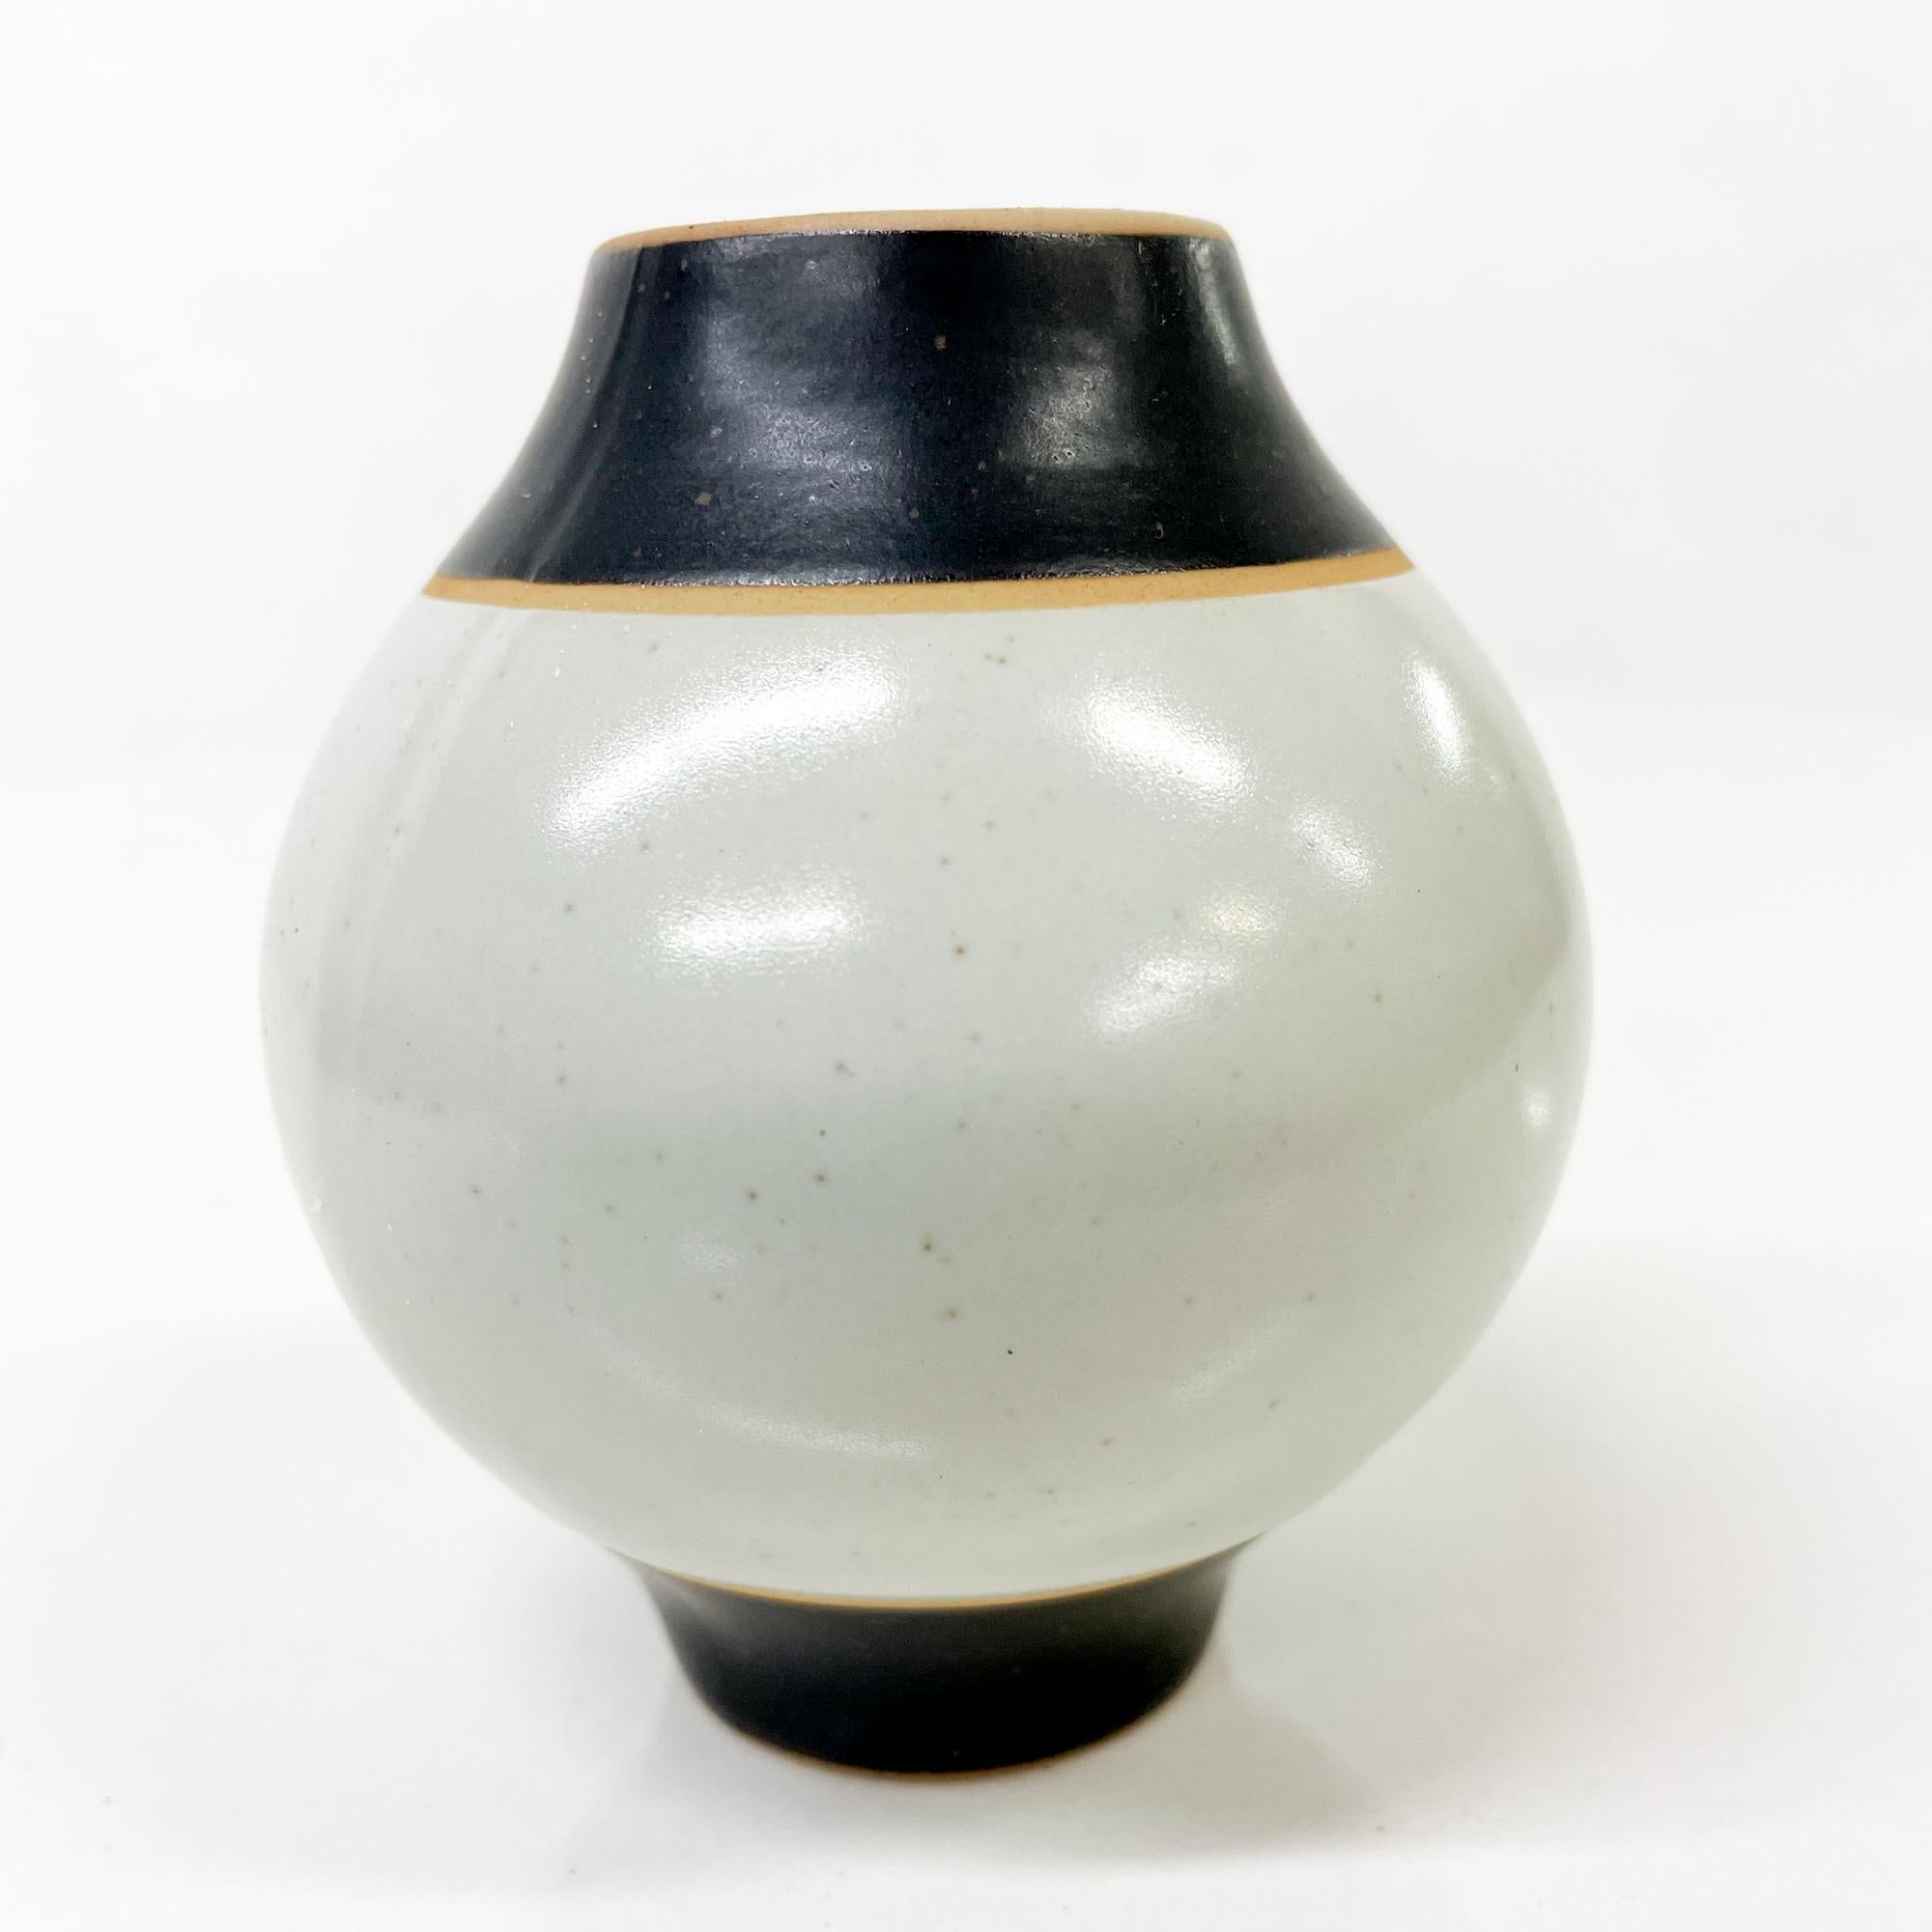 1980s Modernist Pottery Salt or Pepper Shaker Post Modern Design Black Gray 4